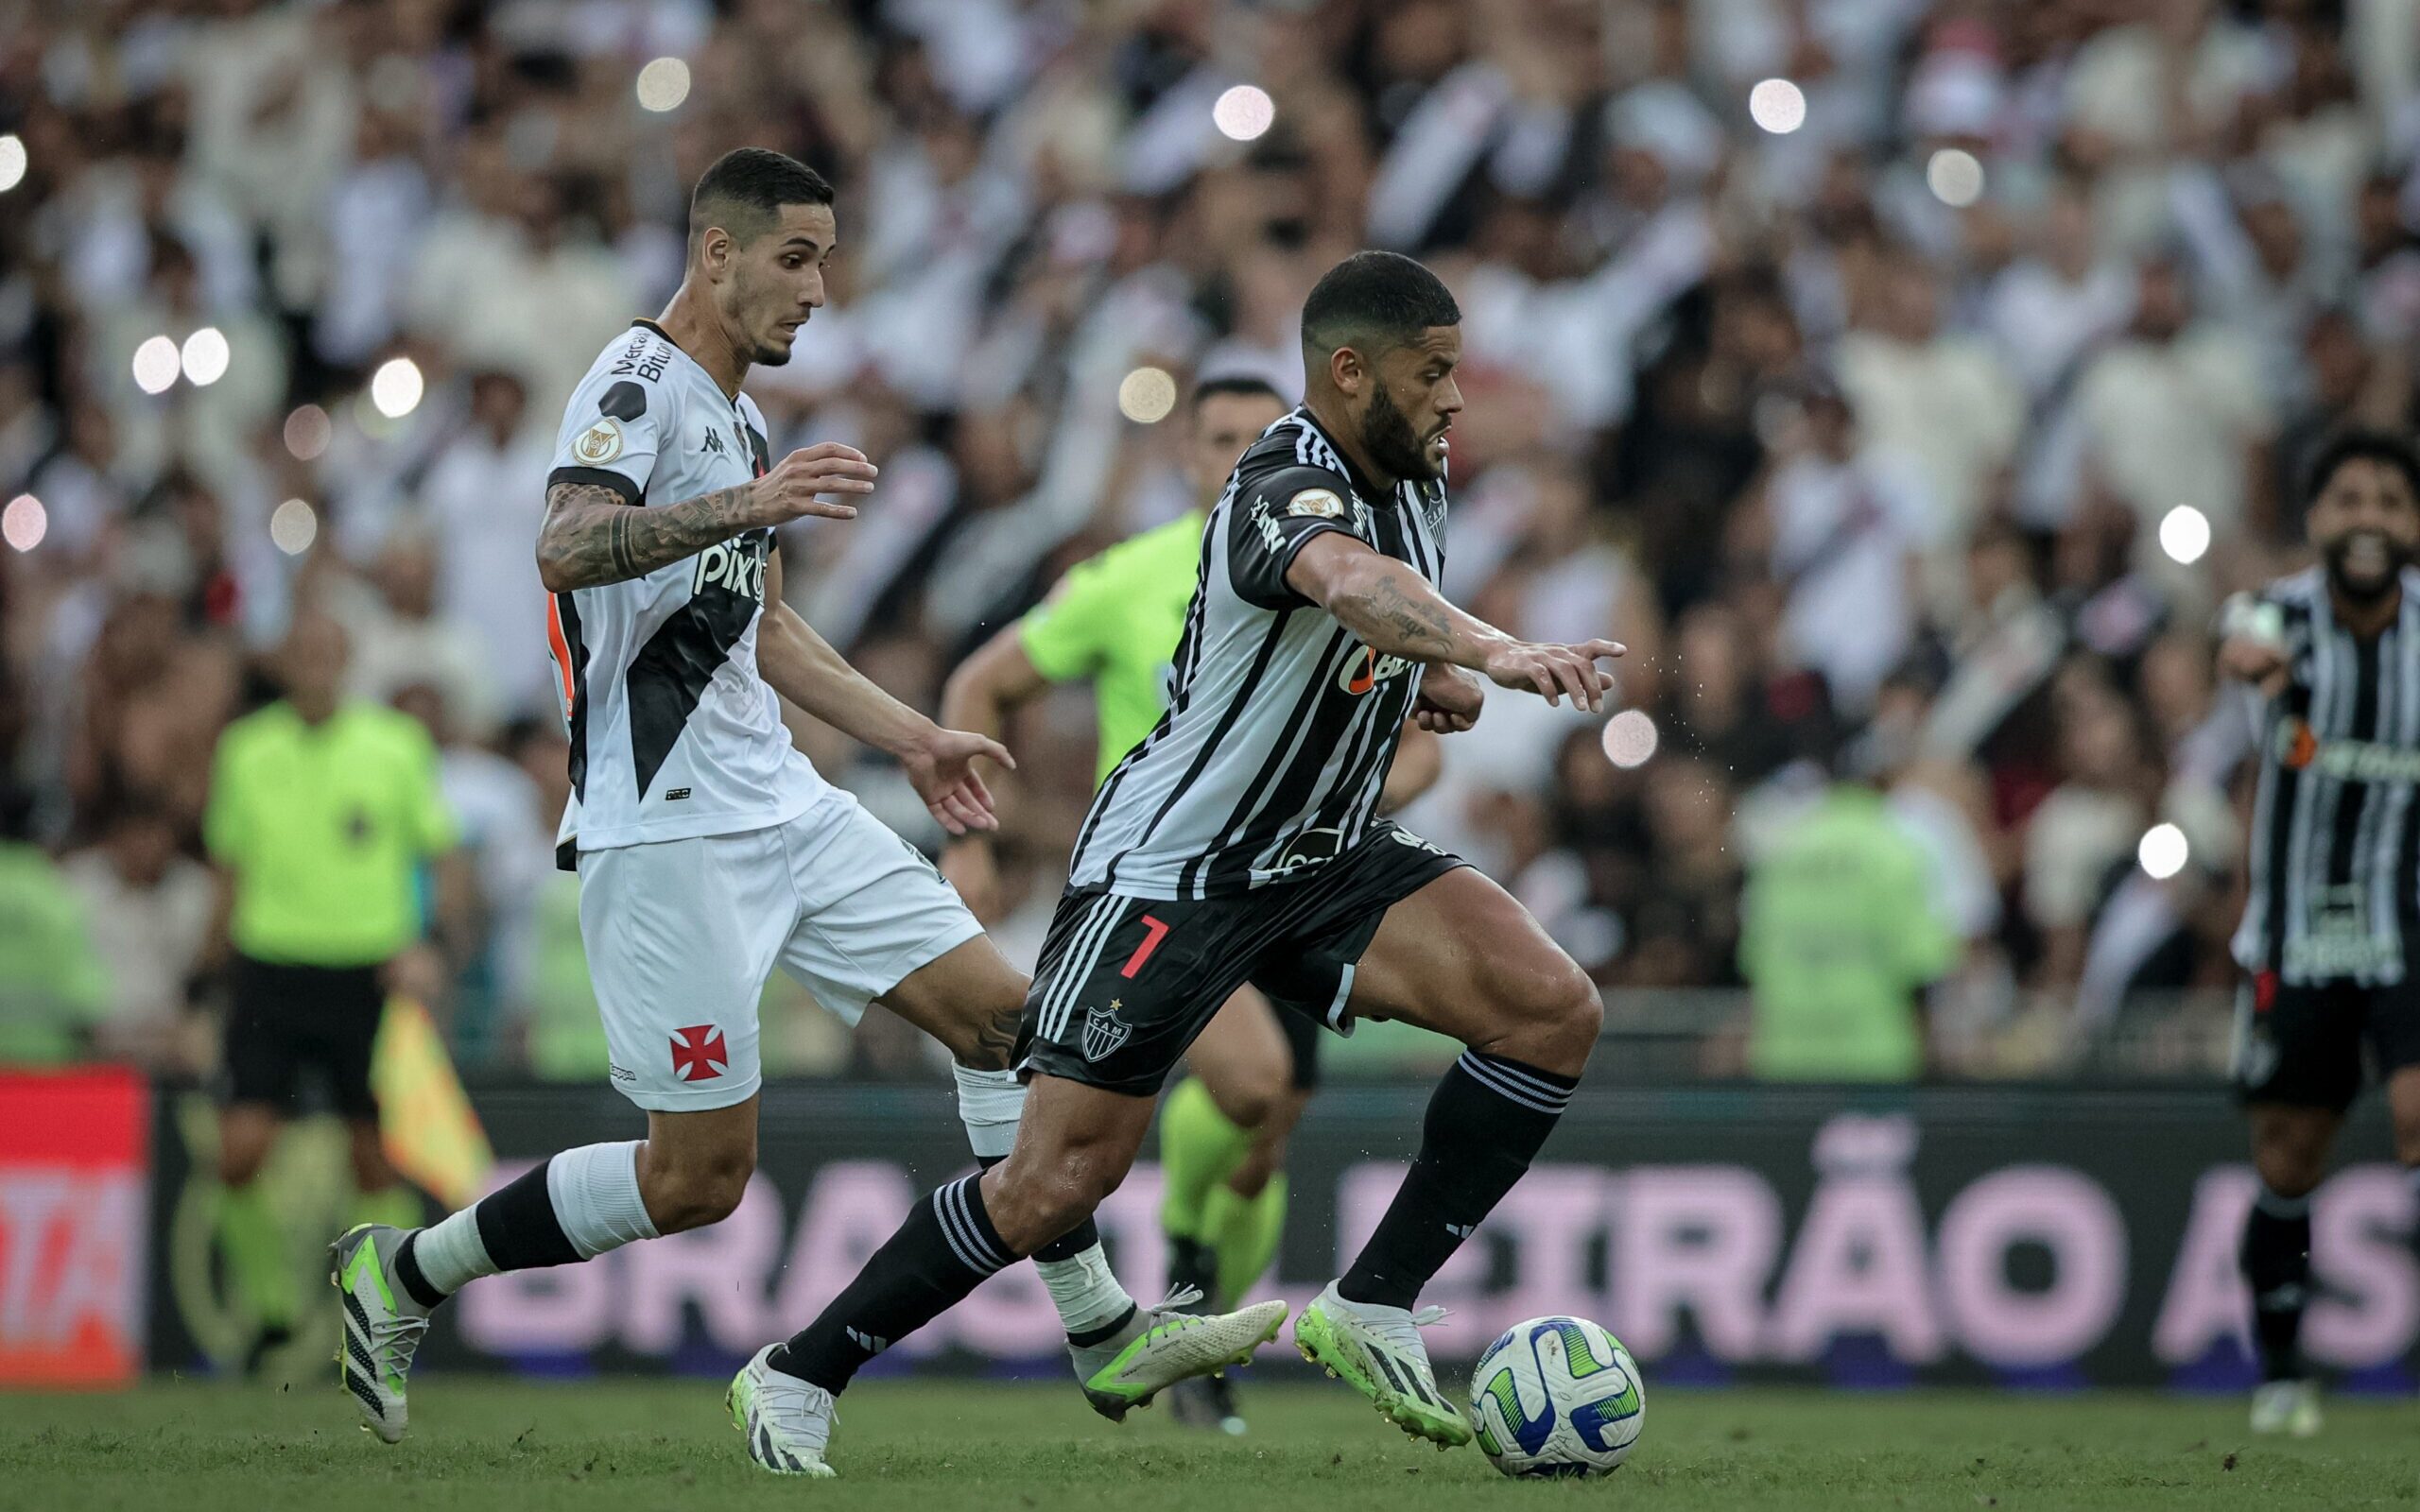 Vasco vence Atlético-MG no reencontro com a torcida no Maracanã